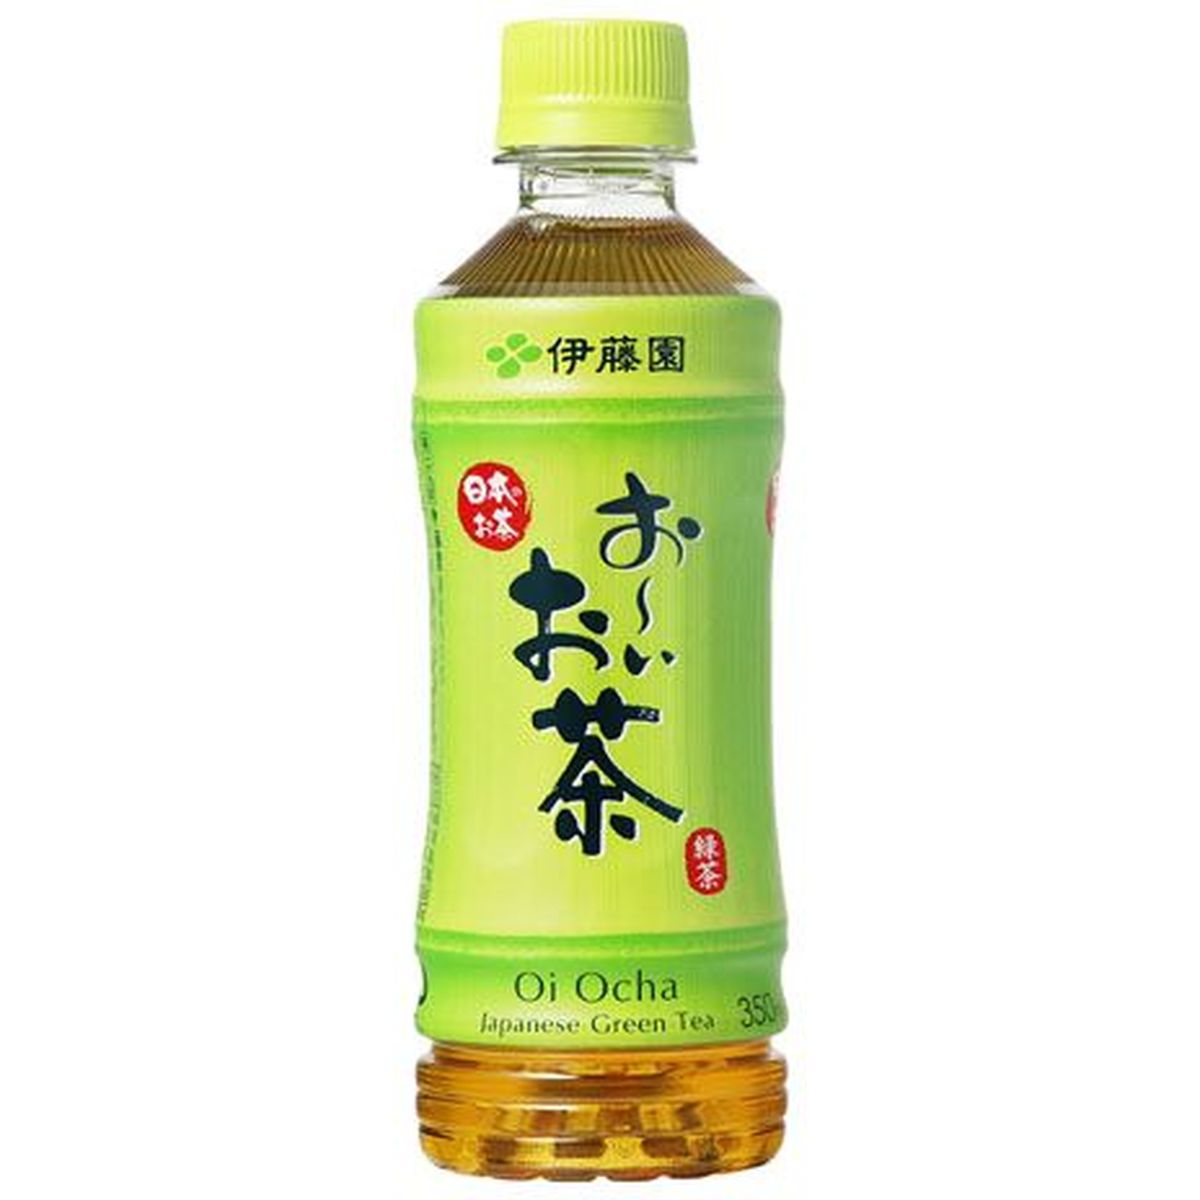 【24個入リ】伊藤園 オーイオ茶 緑茶 ペット 350ml